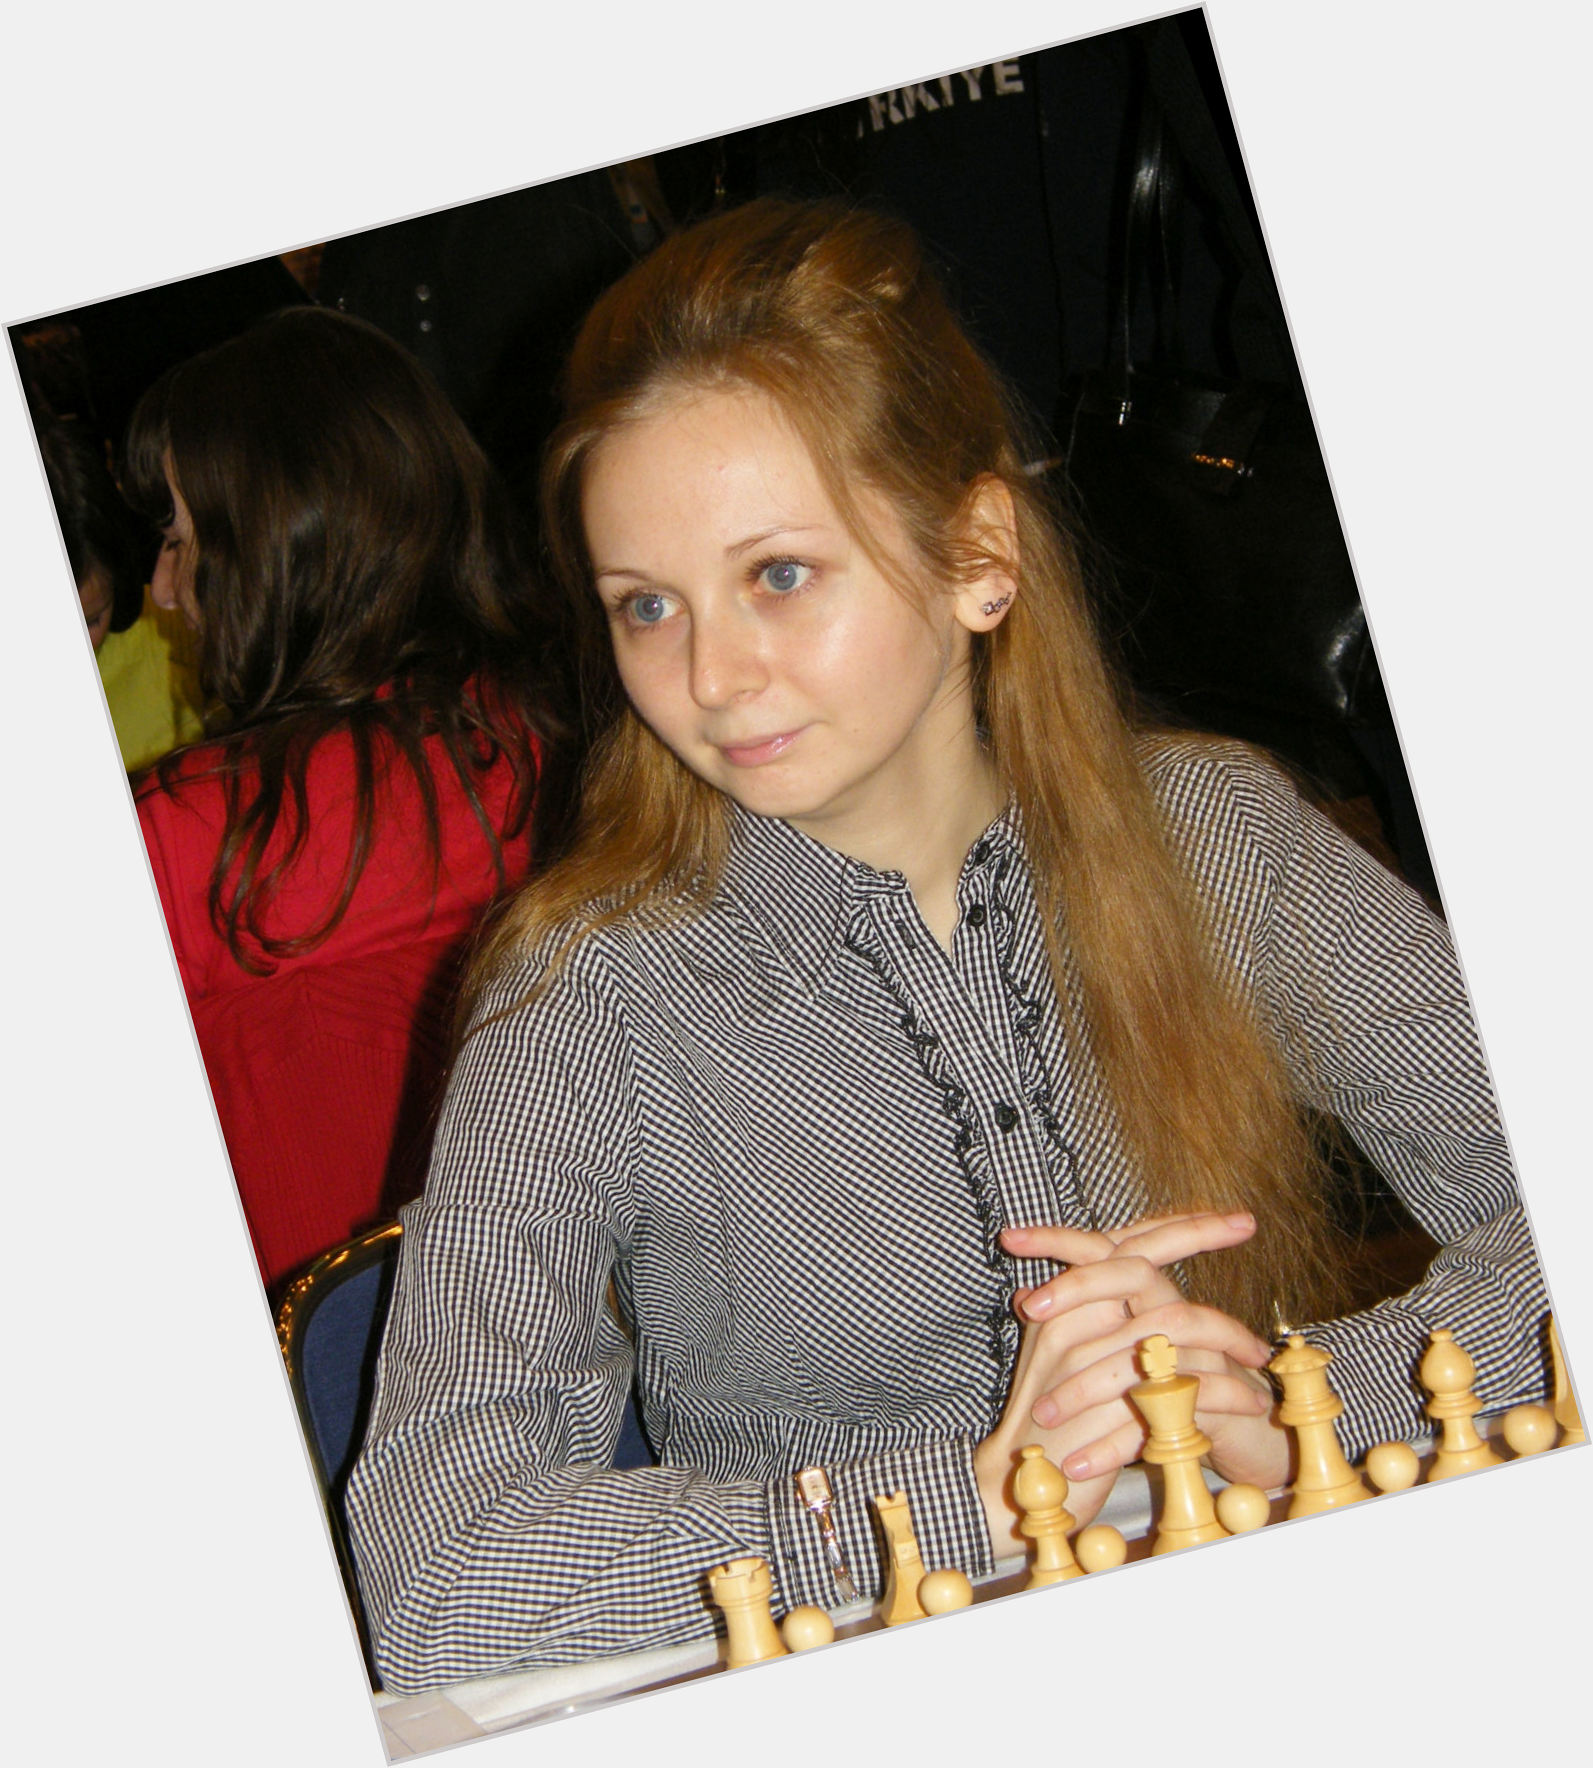 Nadezhda Kosintseva dating 2